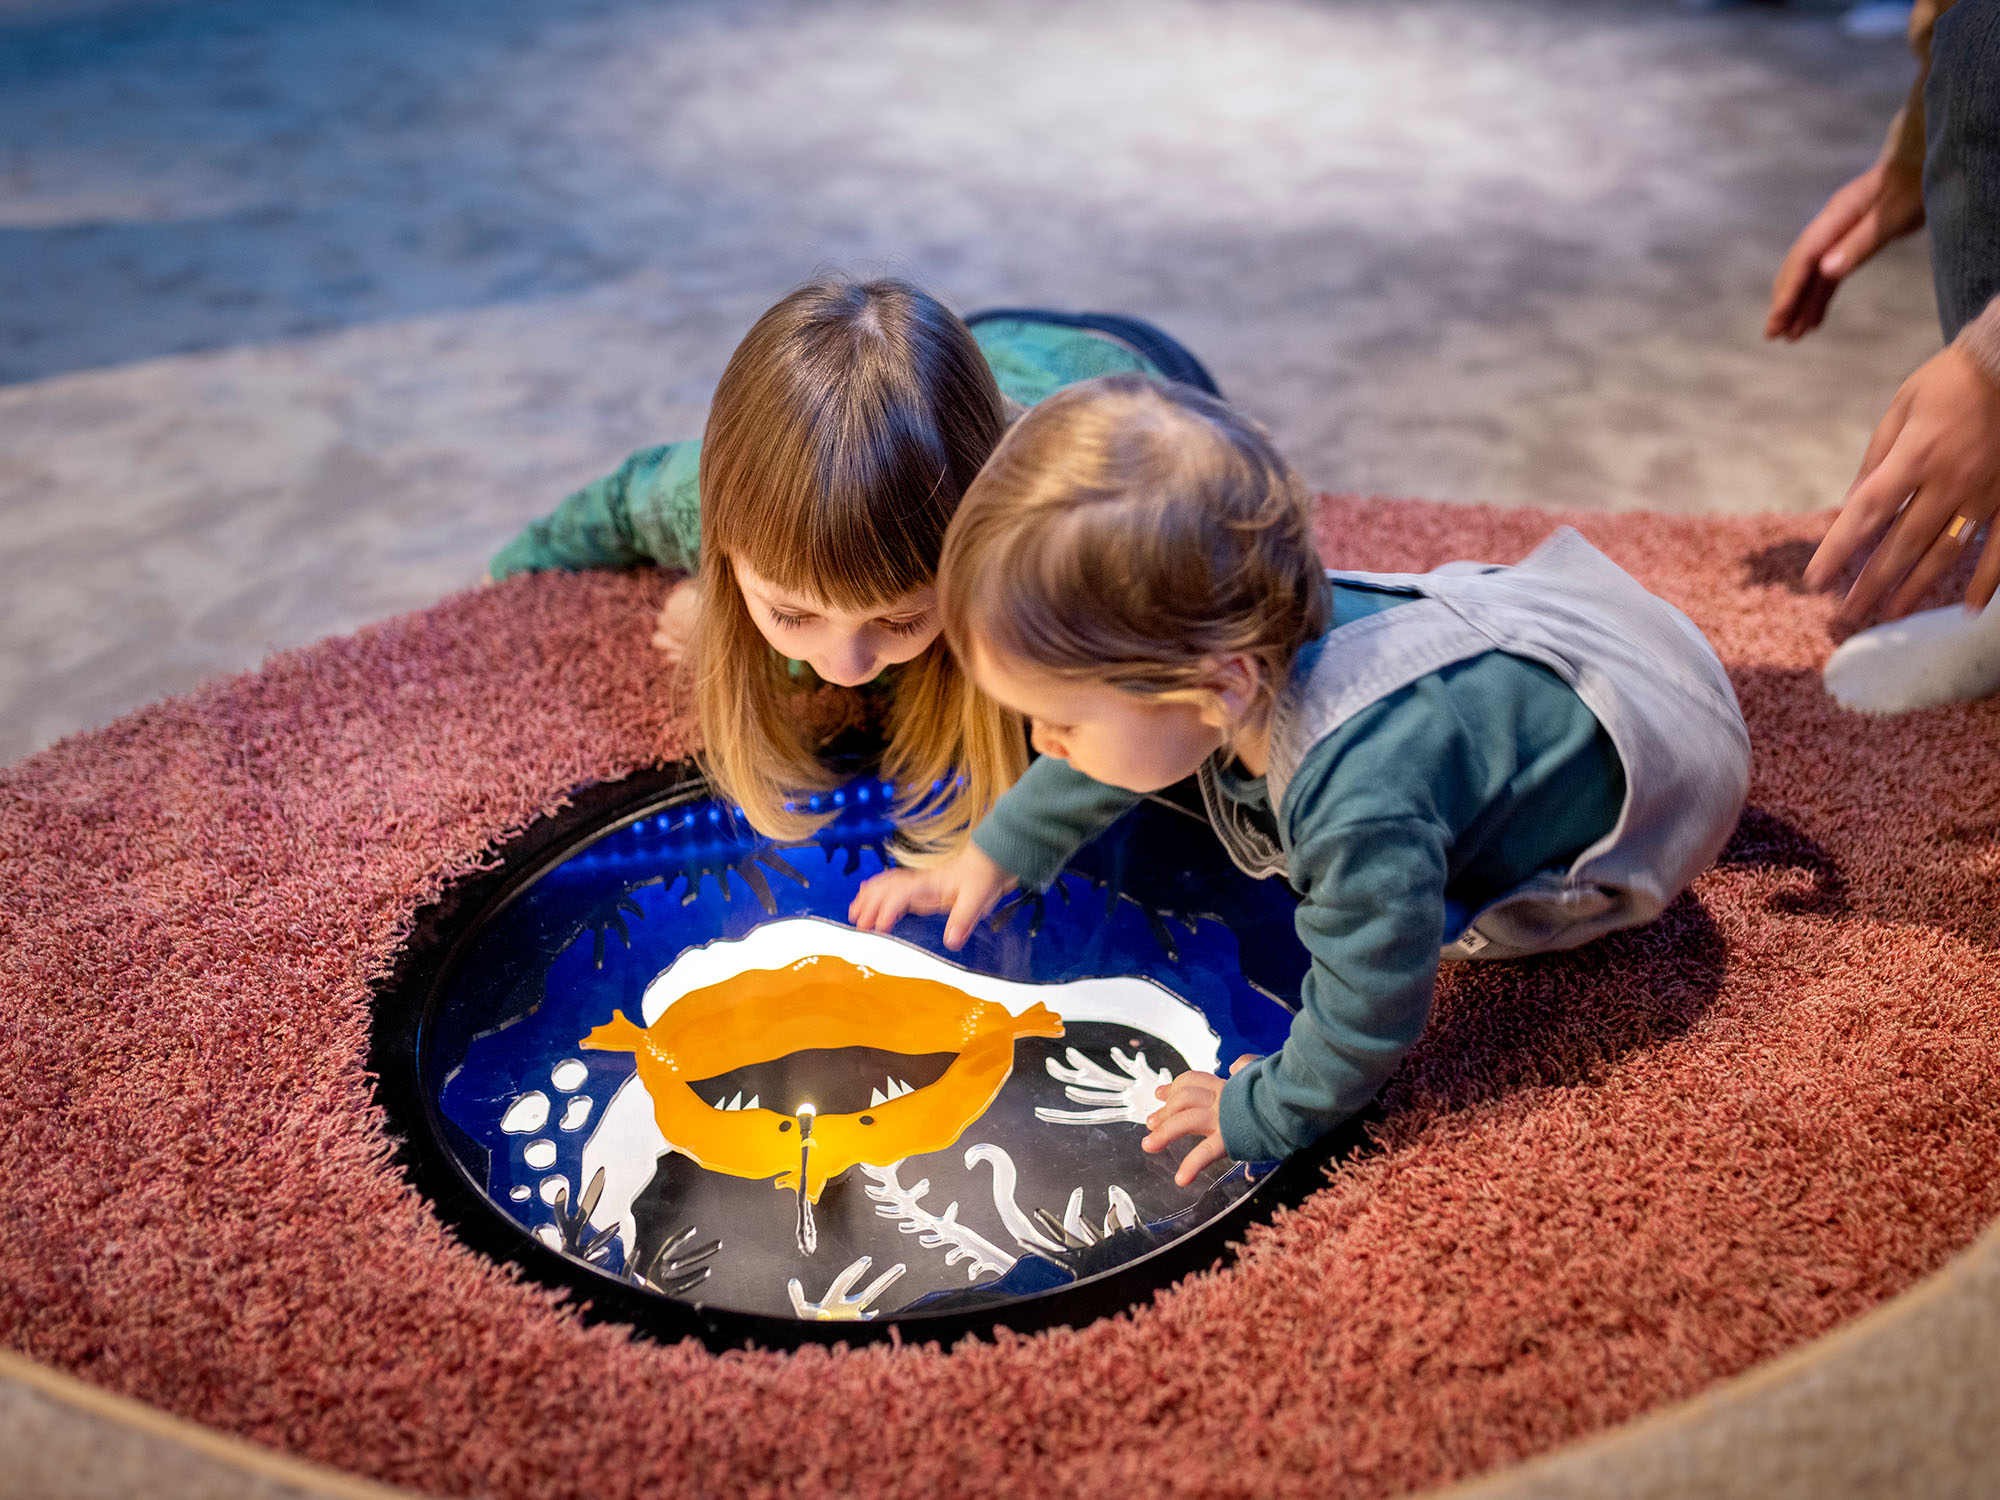 Två små barn tittar på en bild på en fisk, liggandes på en mjuk matta.